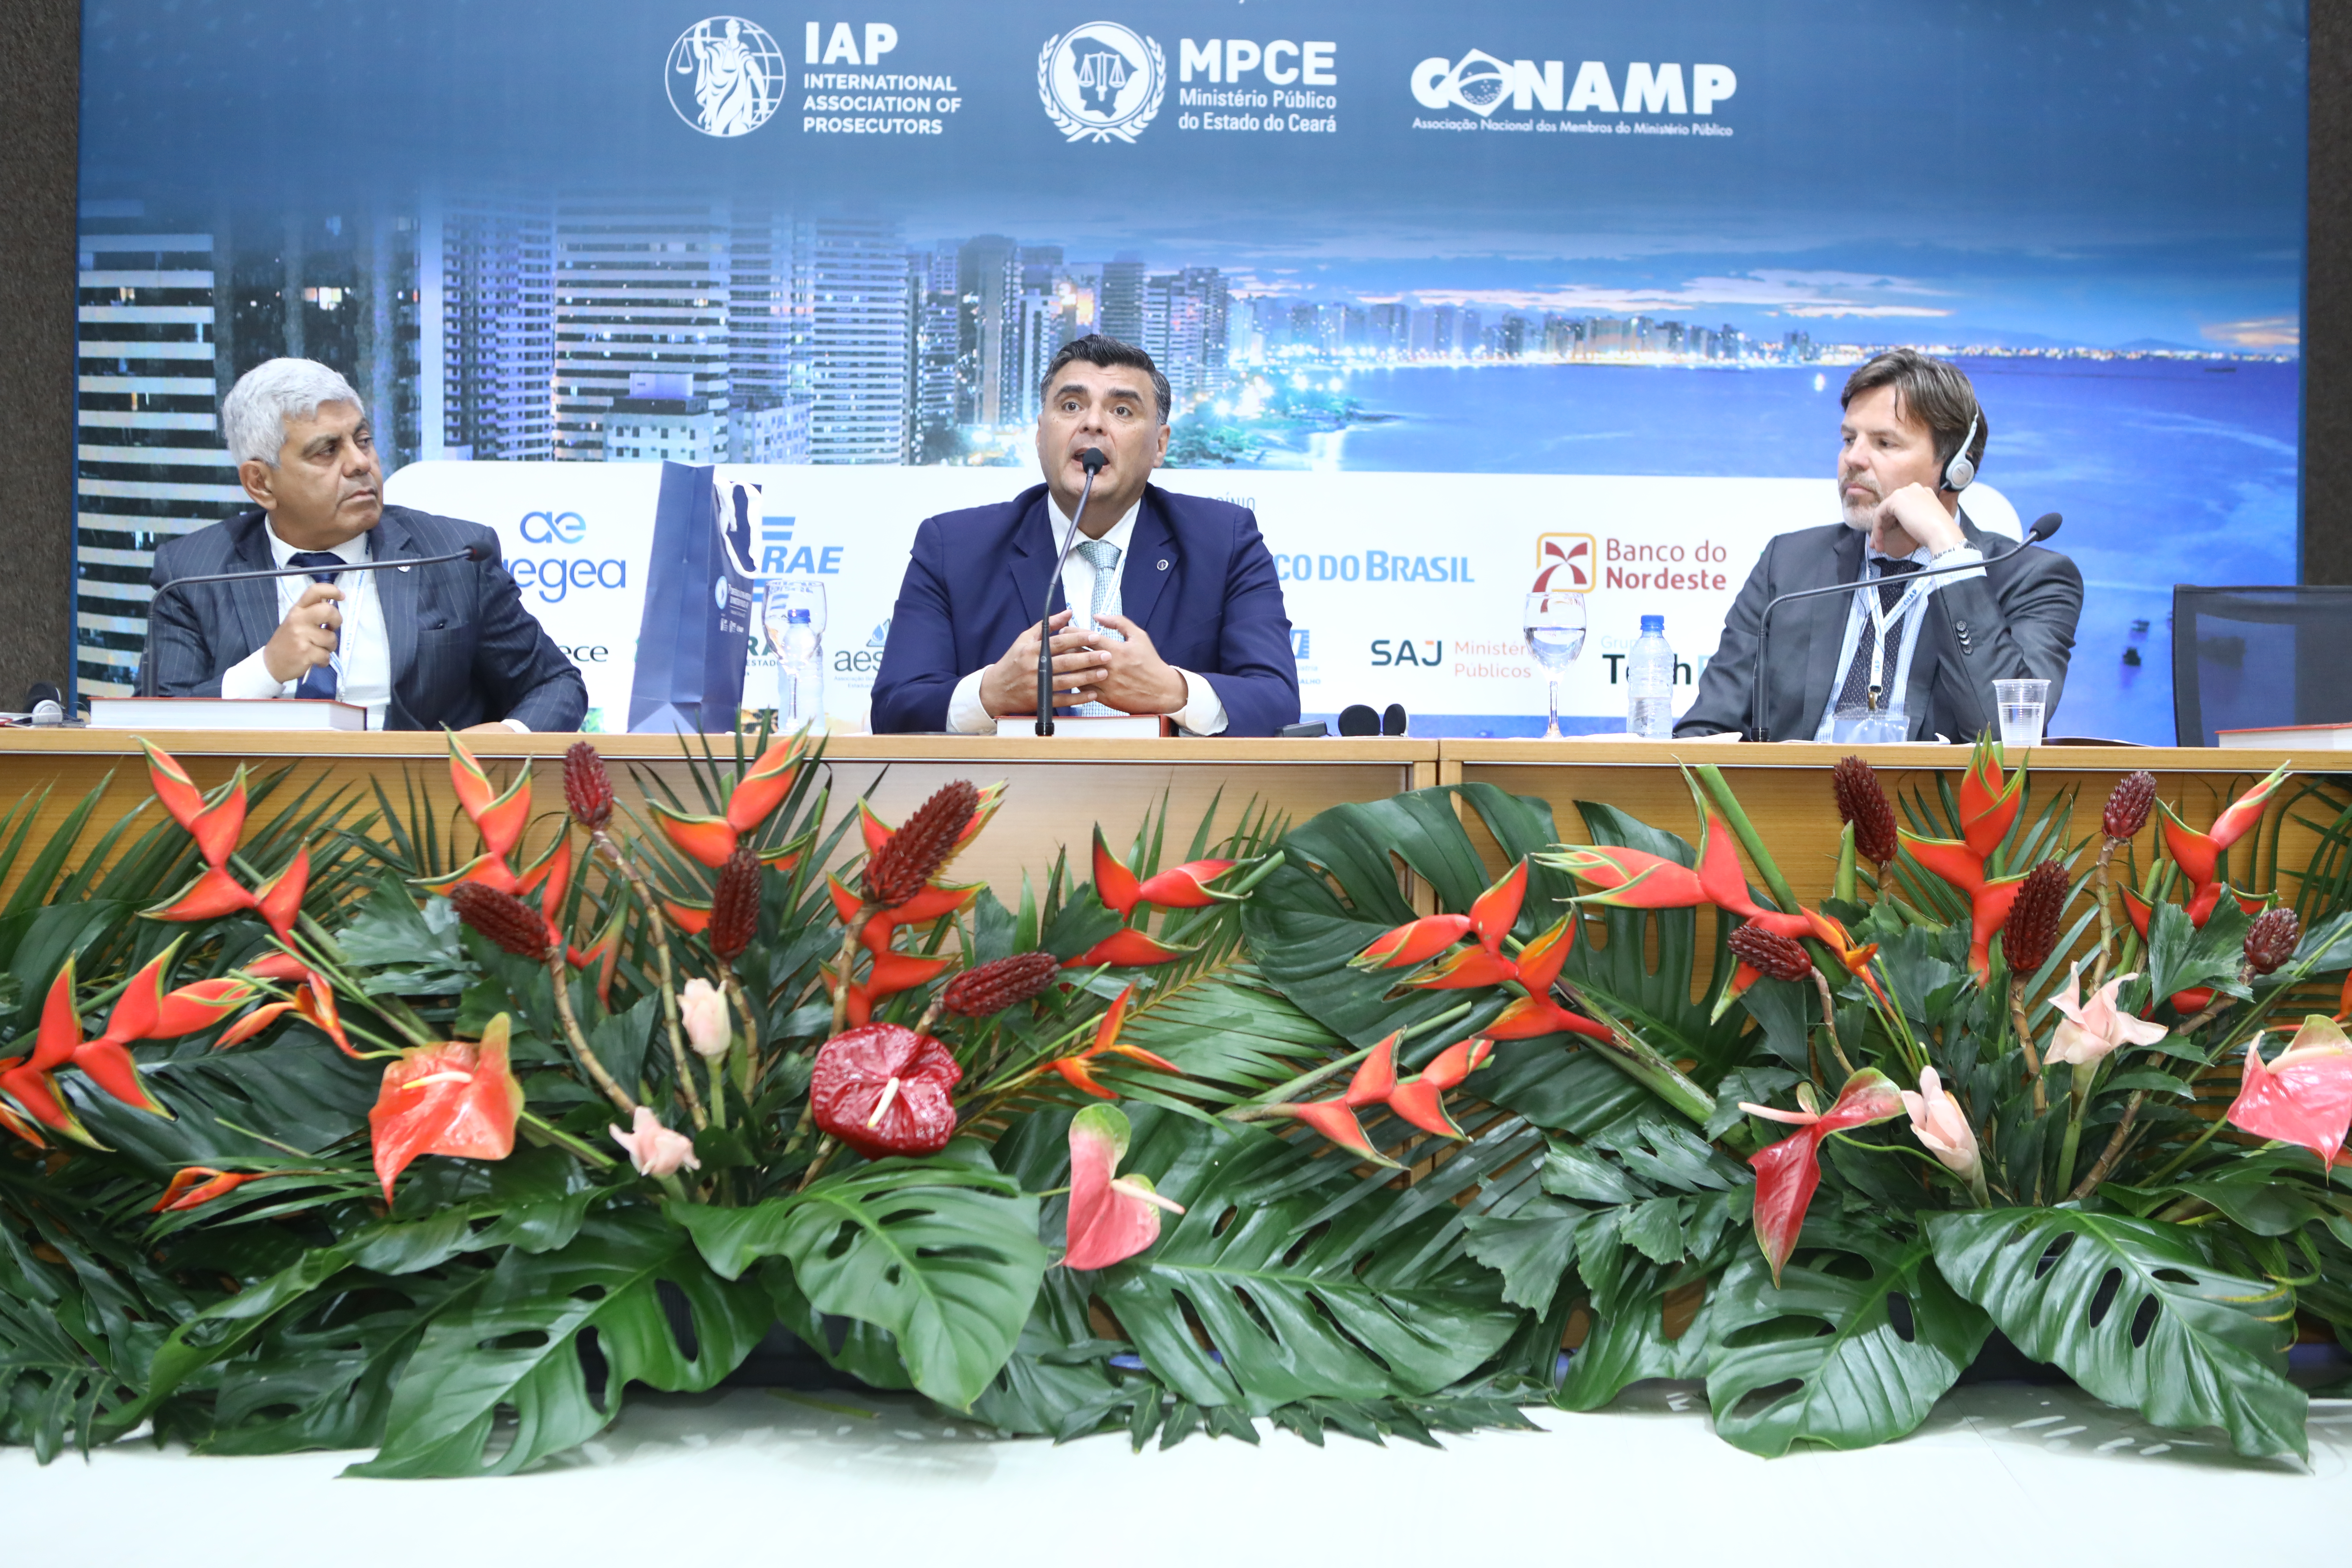 Combate ao tráfico de drogas, armas e pessoas é tema da 3ª Sessão Plenária na 7ª Conferência Regional da IAP na América Latina